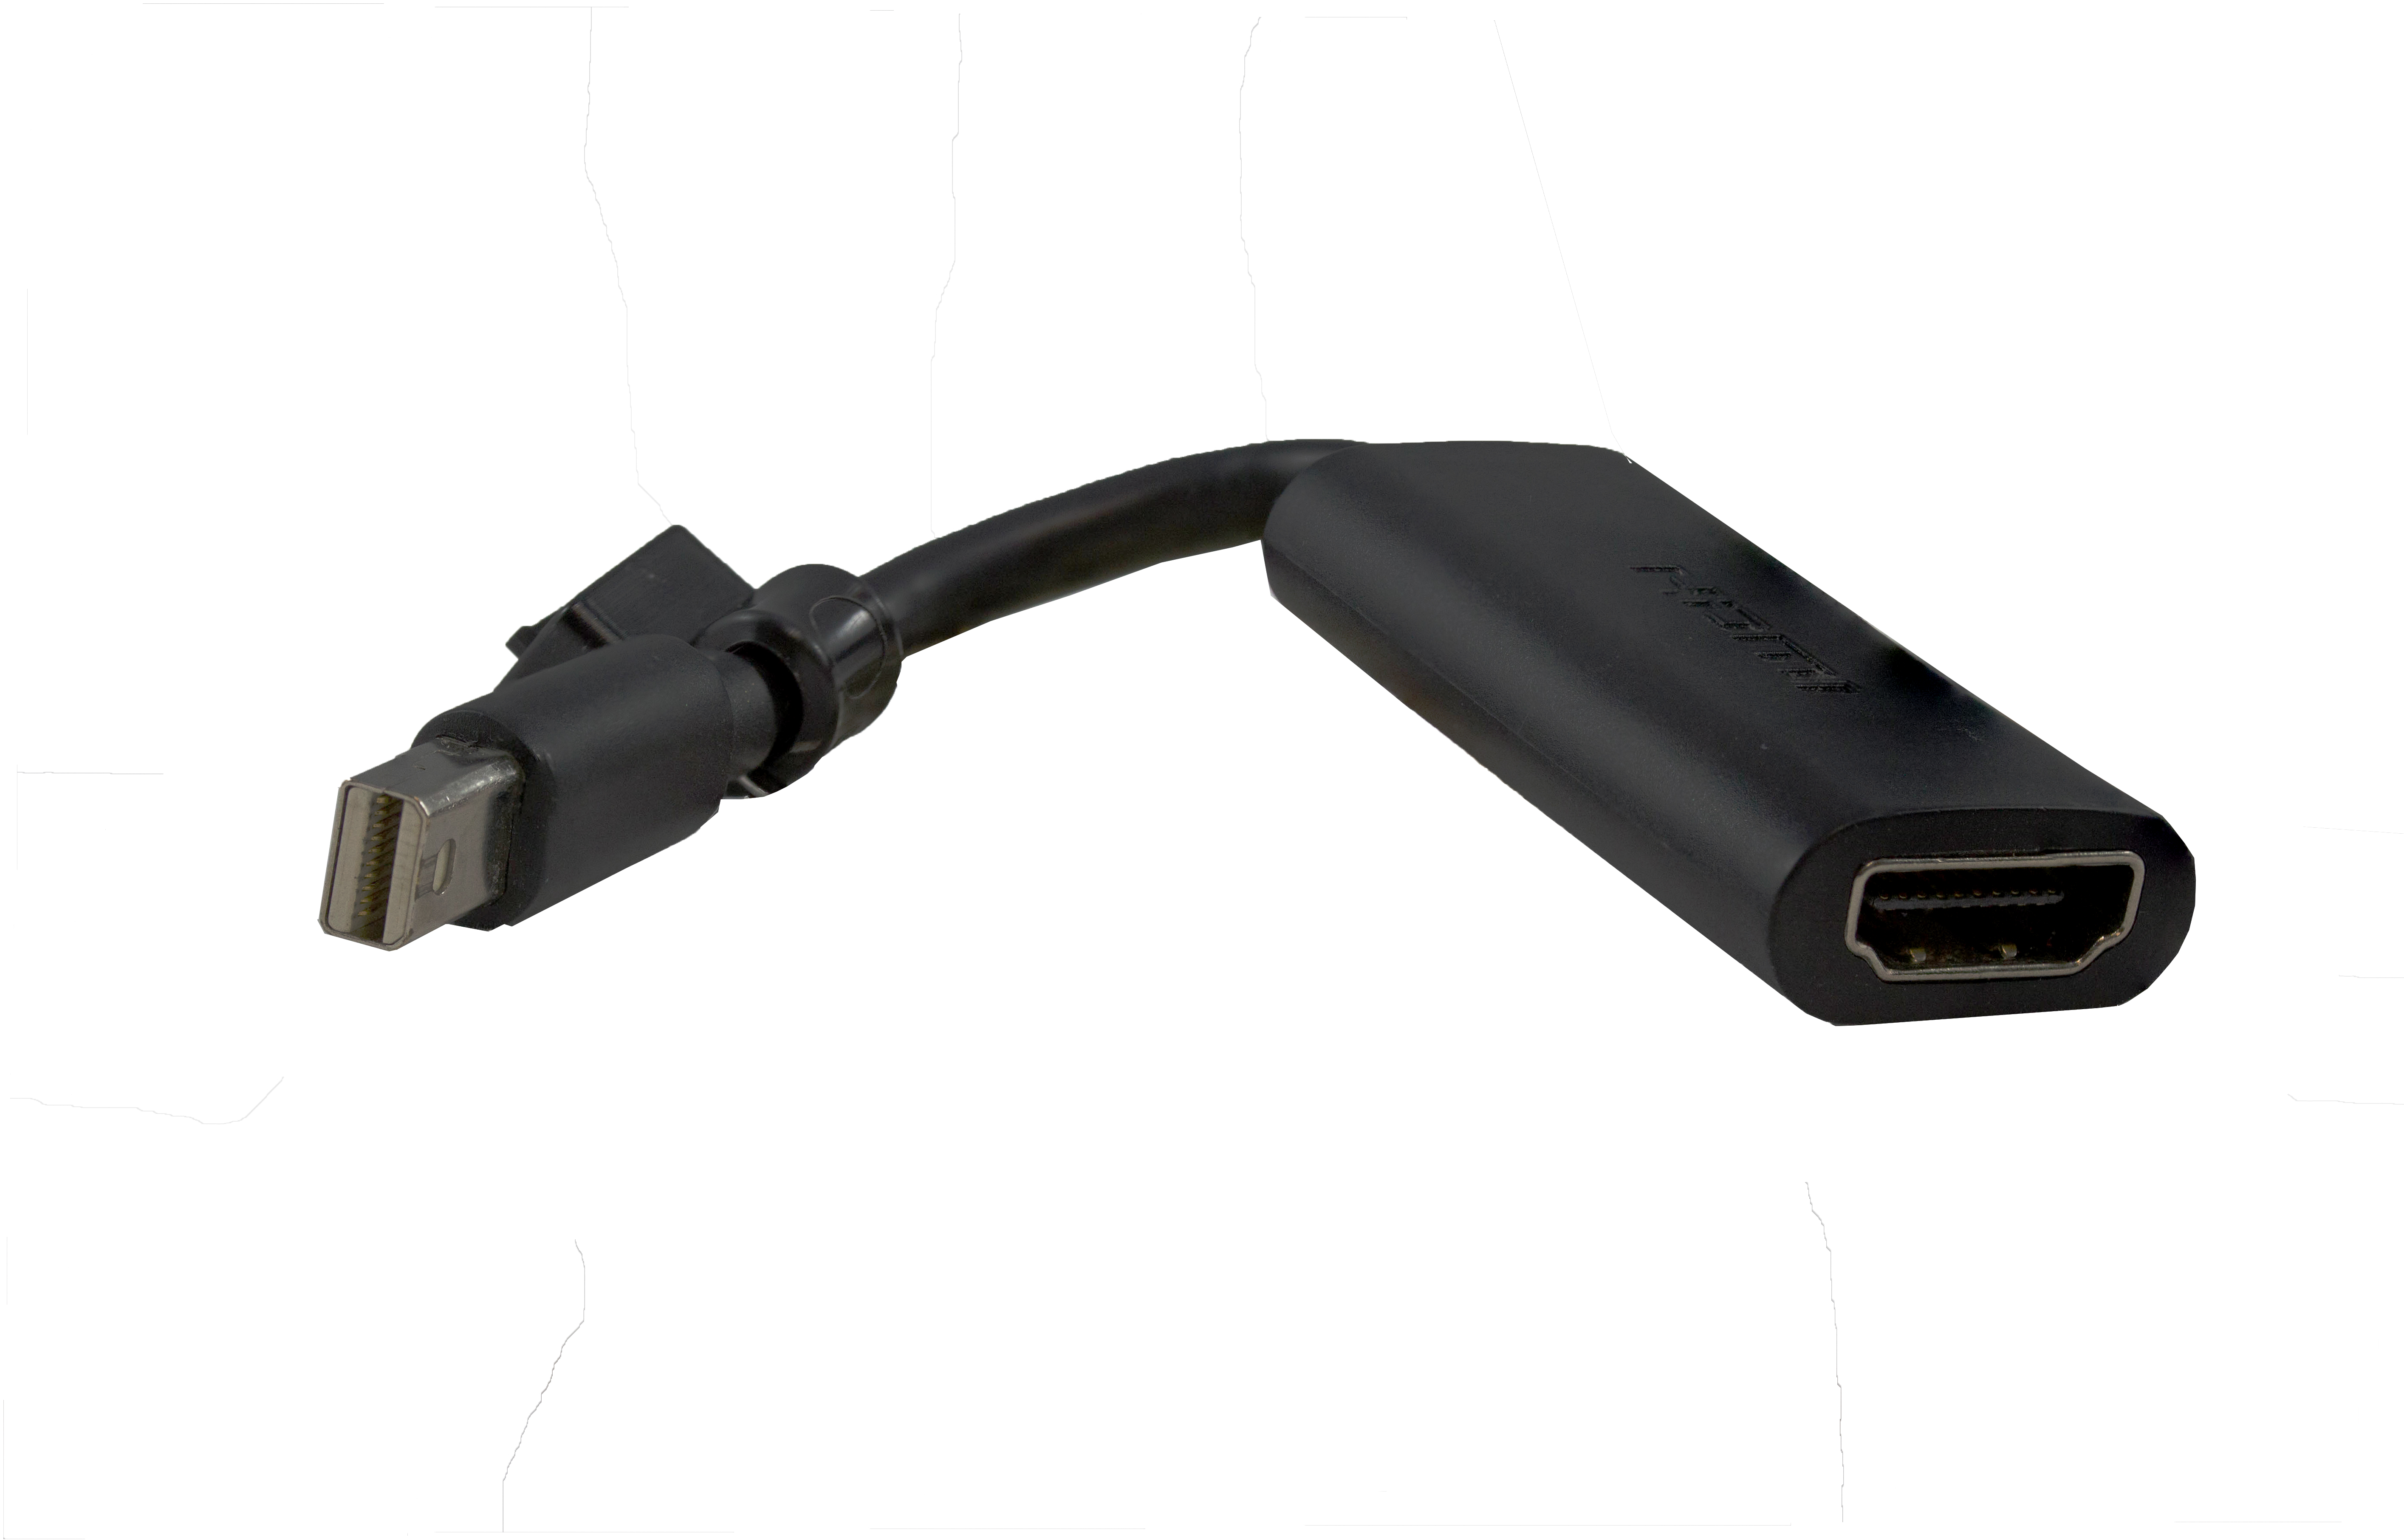 Mini DisplayPort to HDMI adapter